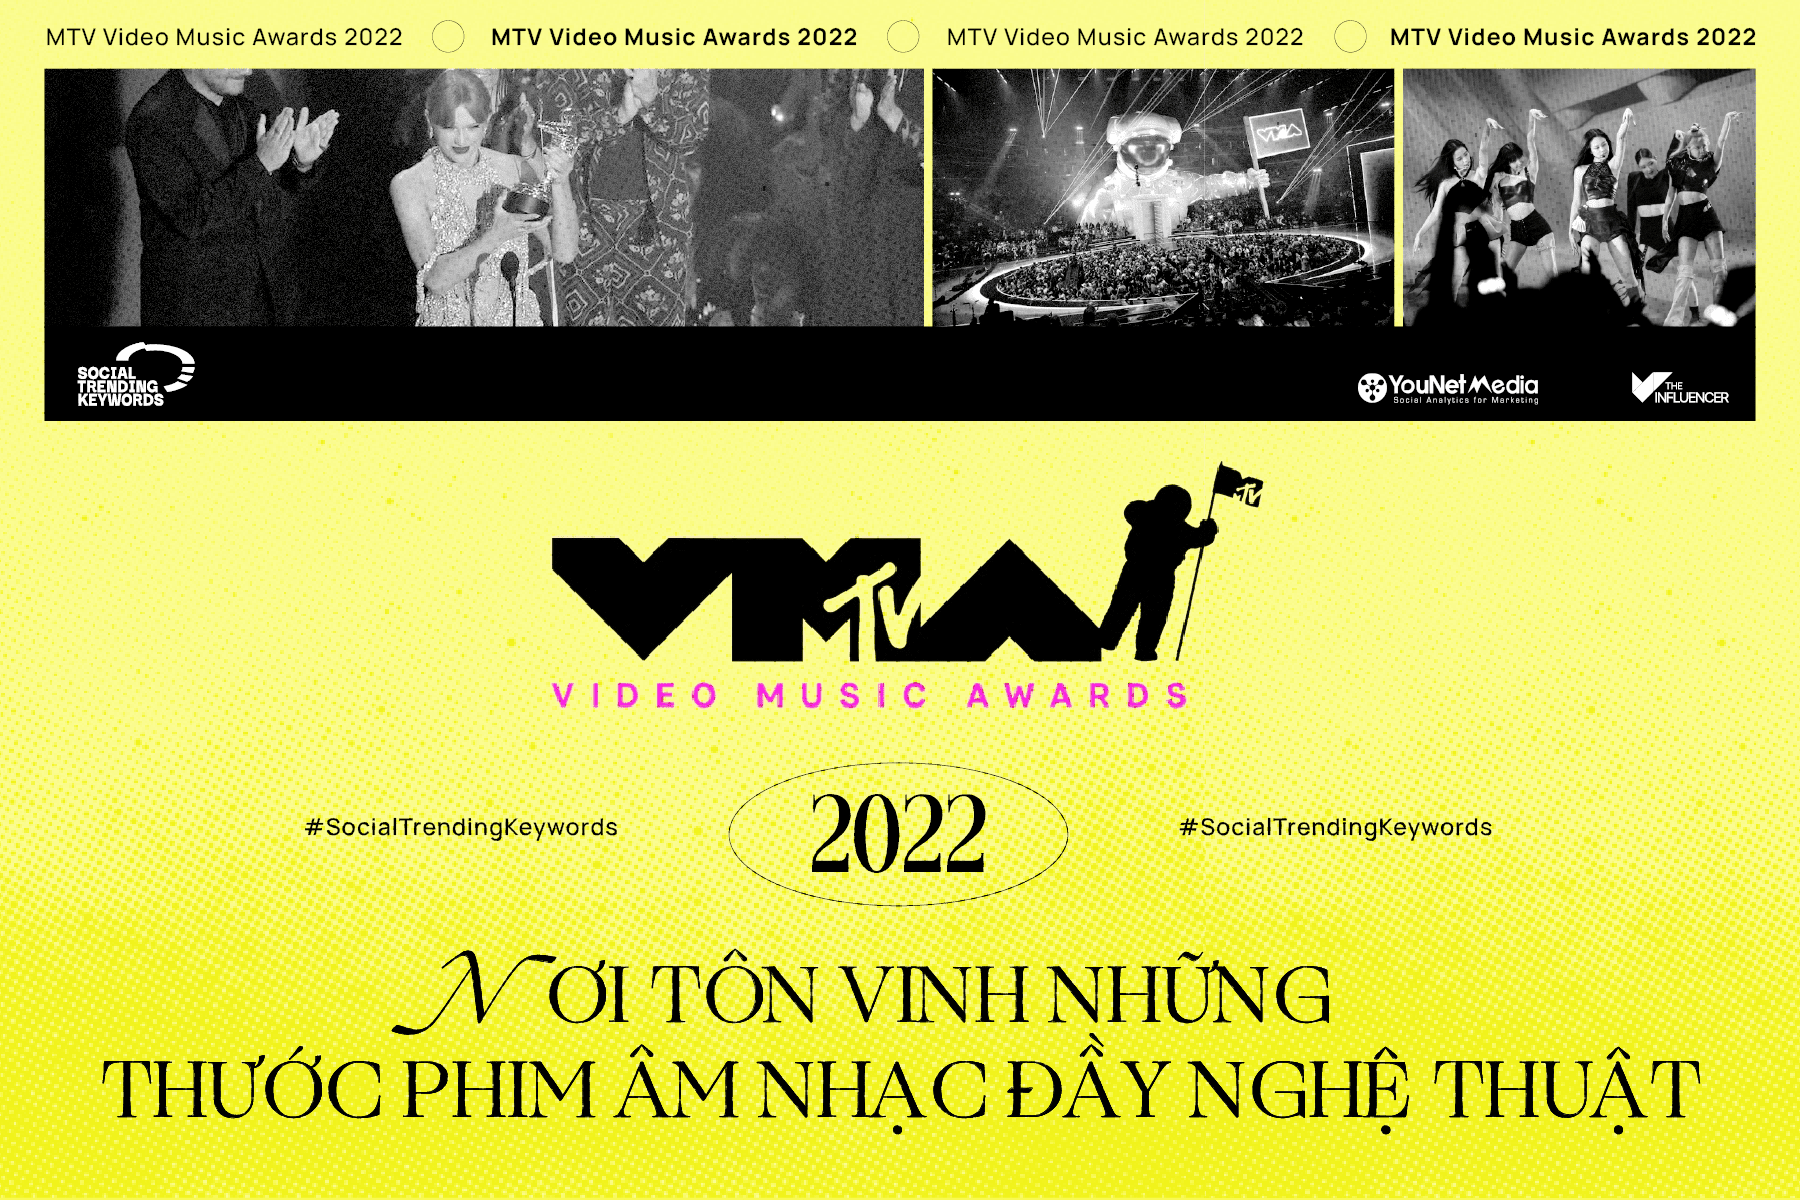 #SocialTrendingKeywords: MTV Video Music Awards 2022 - Nơi tôn vinh những thước phim đầy nghệ thuật